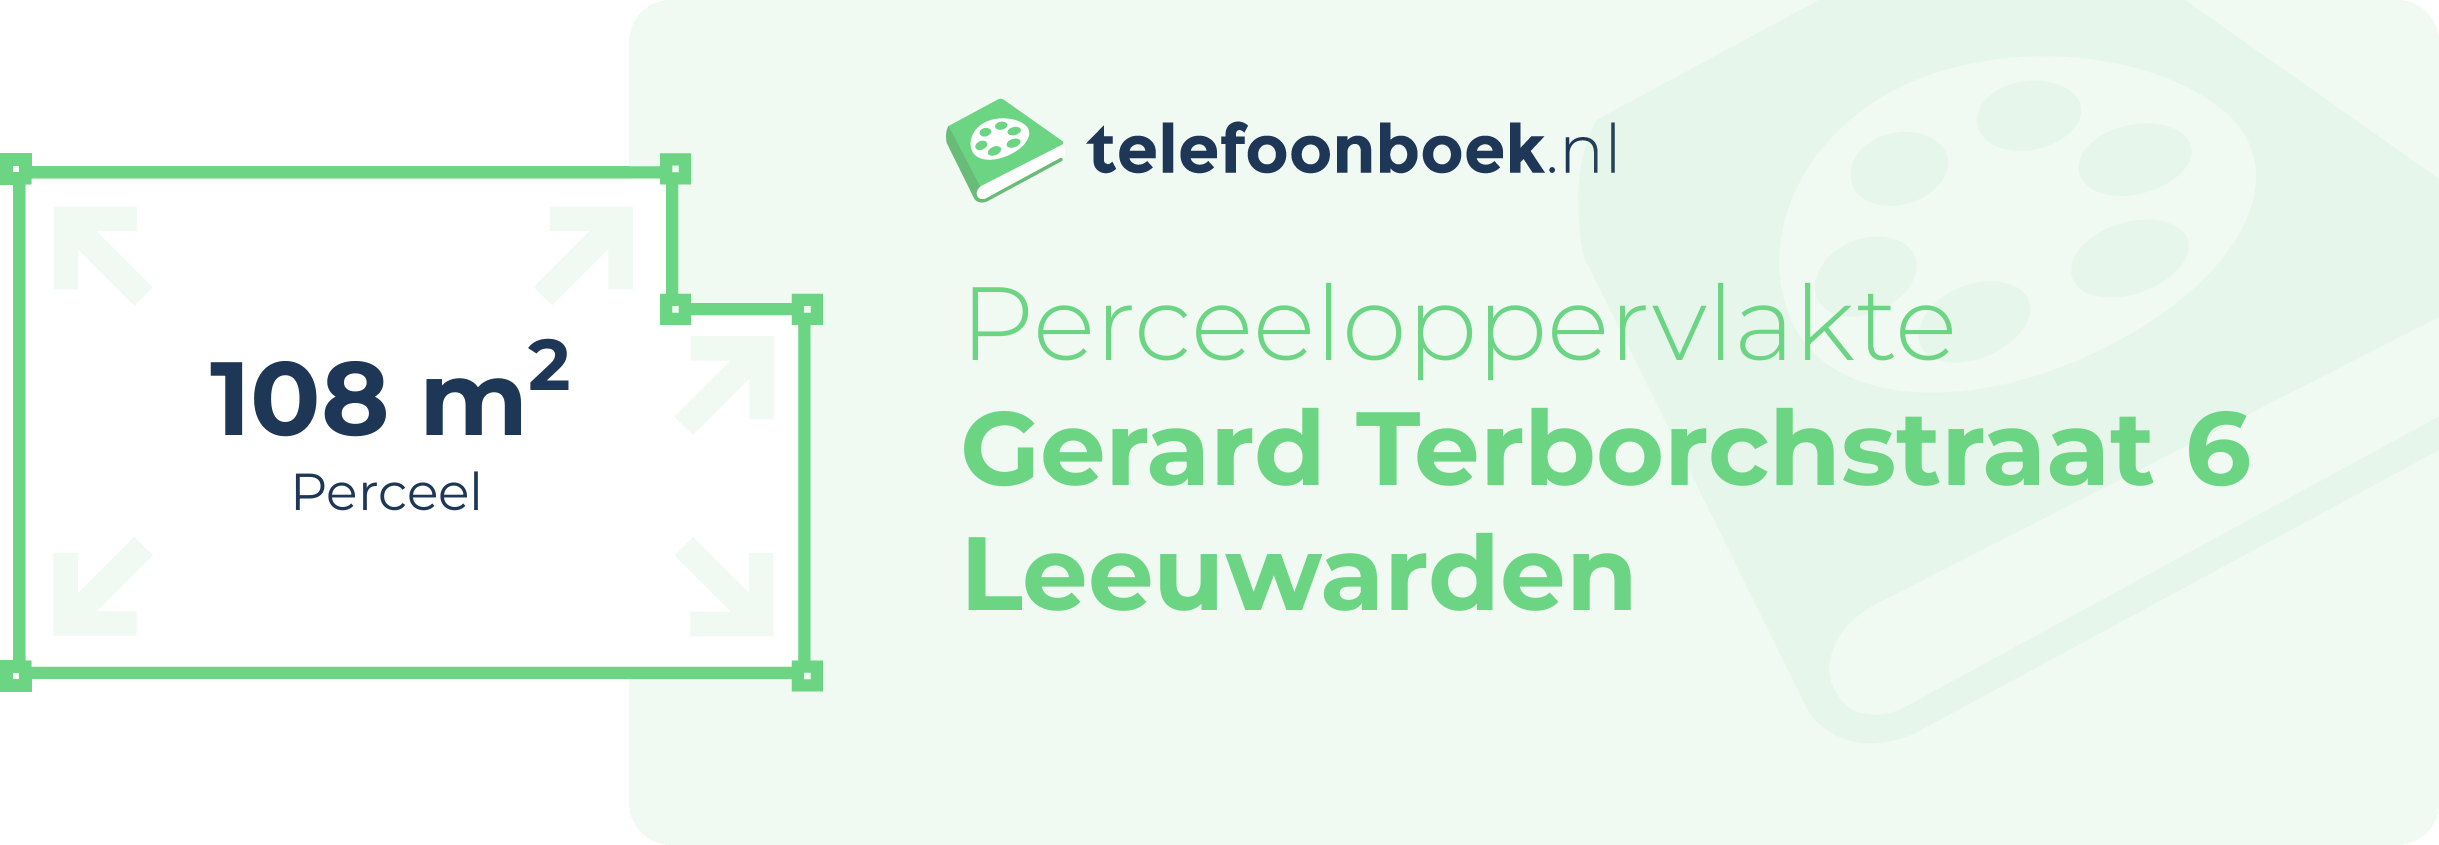 Perceeloppervlakte Gerard Terborchstraat 6 Leeuwarden